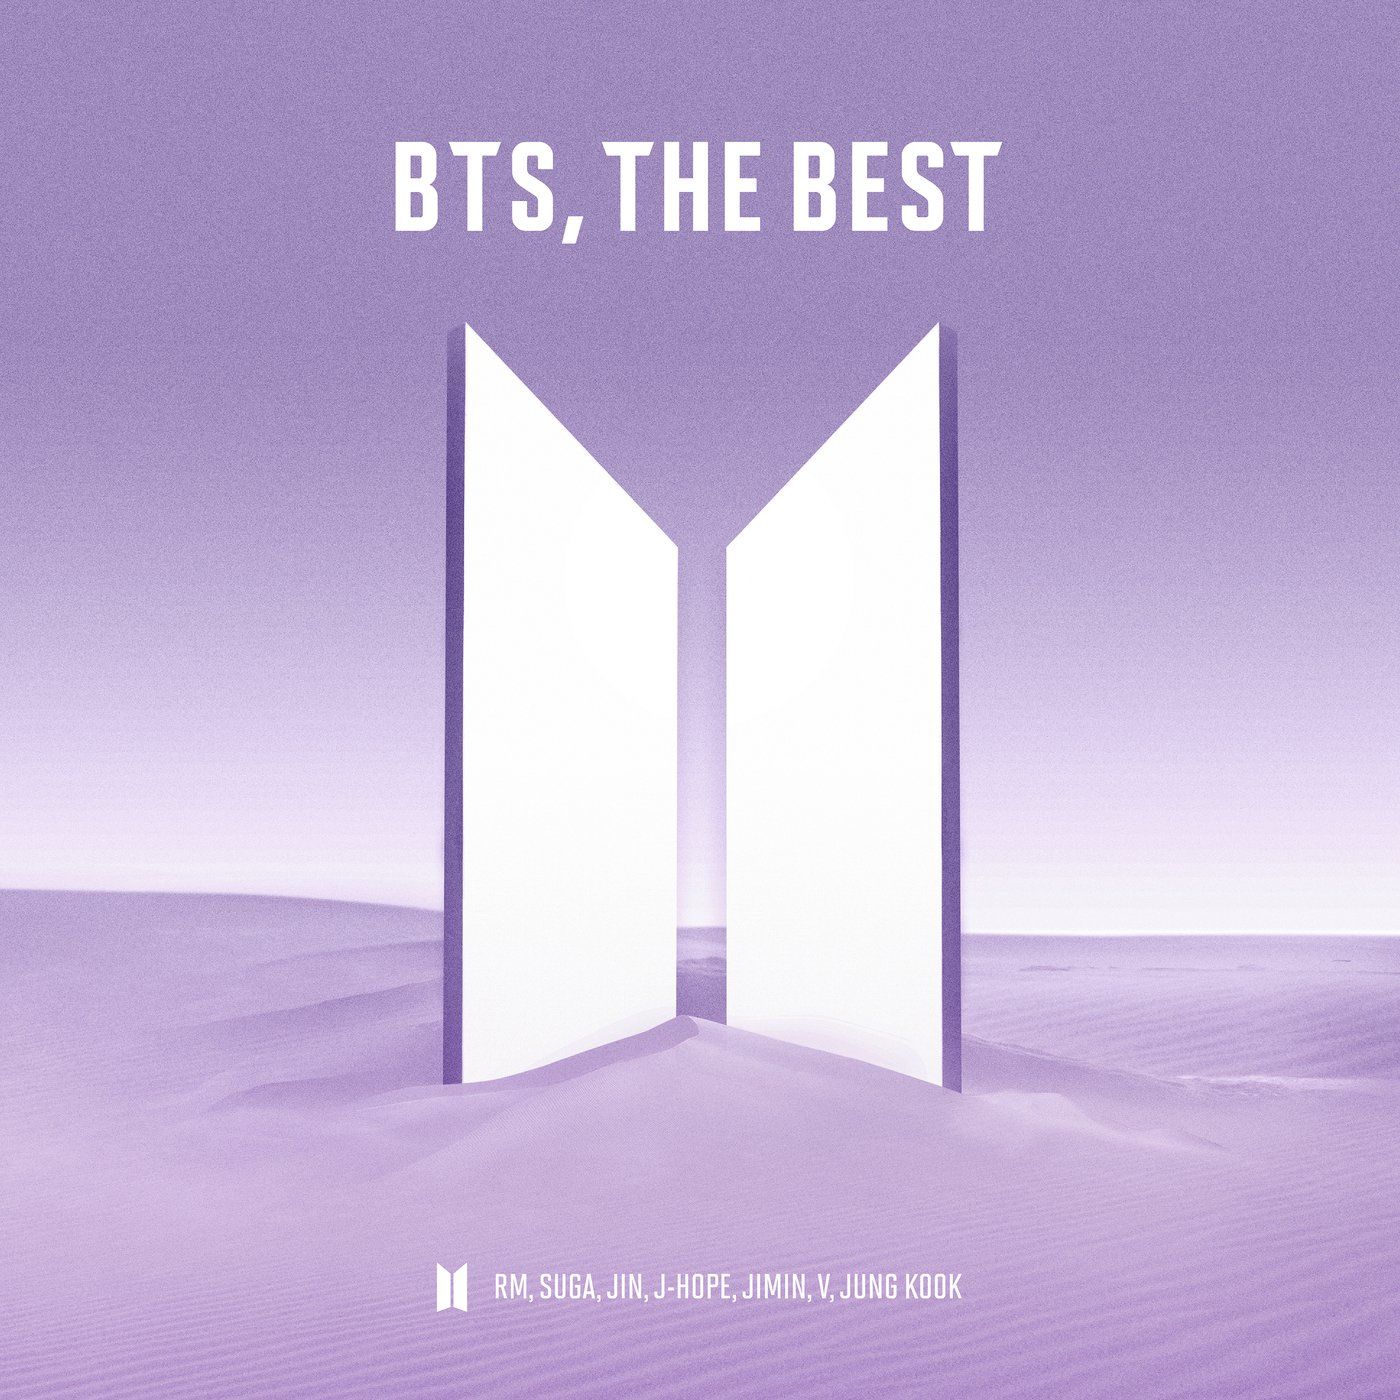 دانلود آلبوم BTS به نام (2021) - BTS, THE BEST با کیفیت FLAC 🔥